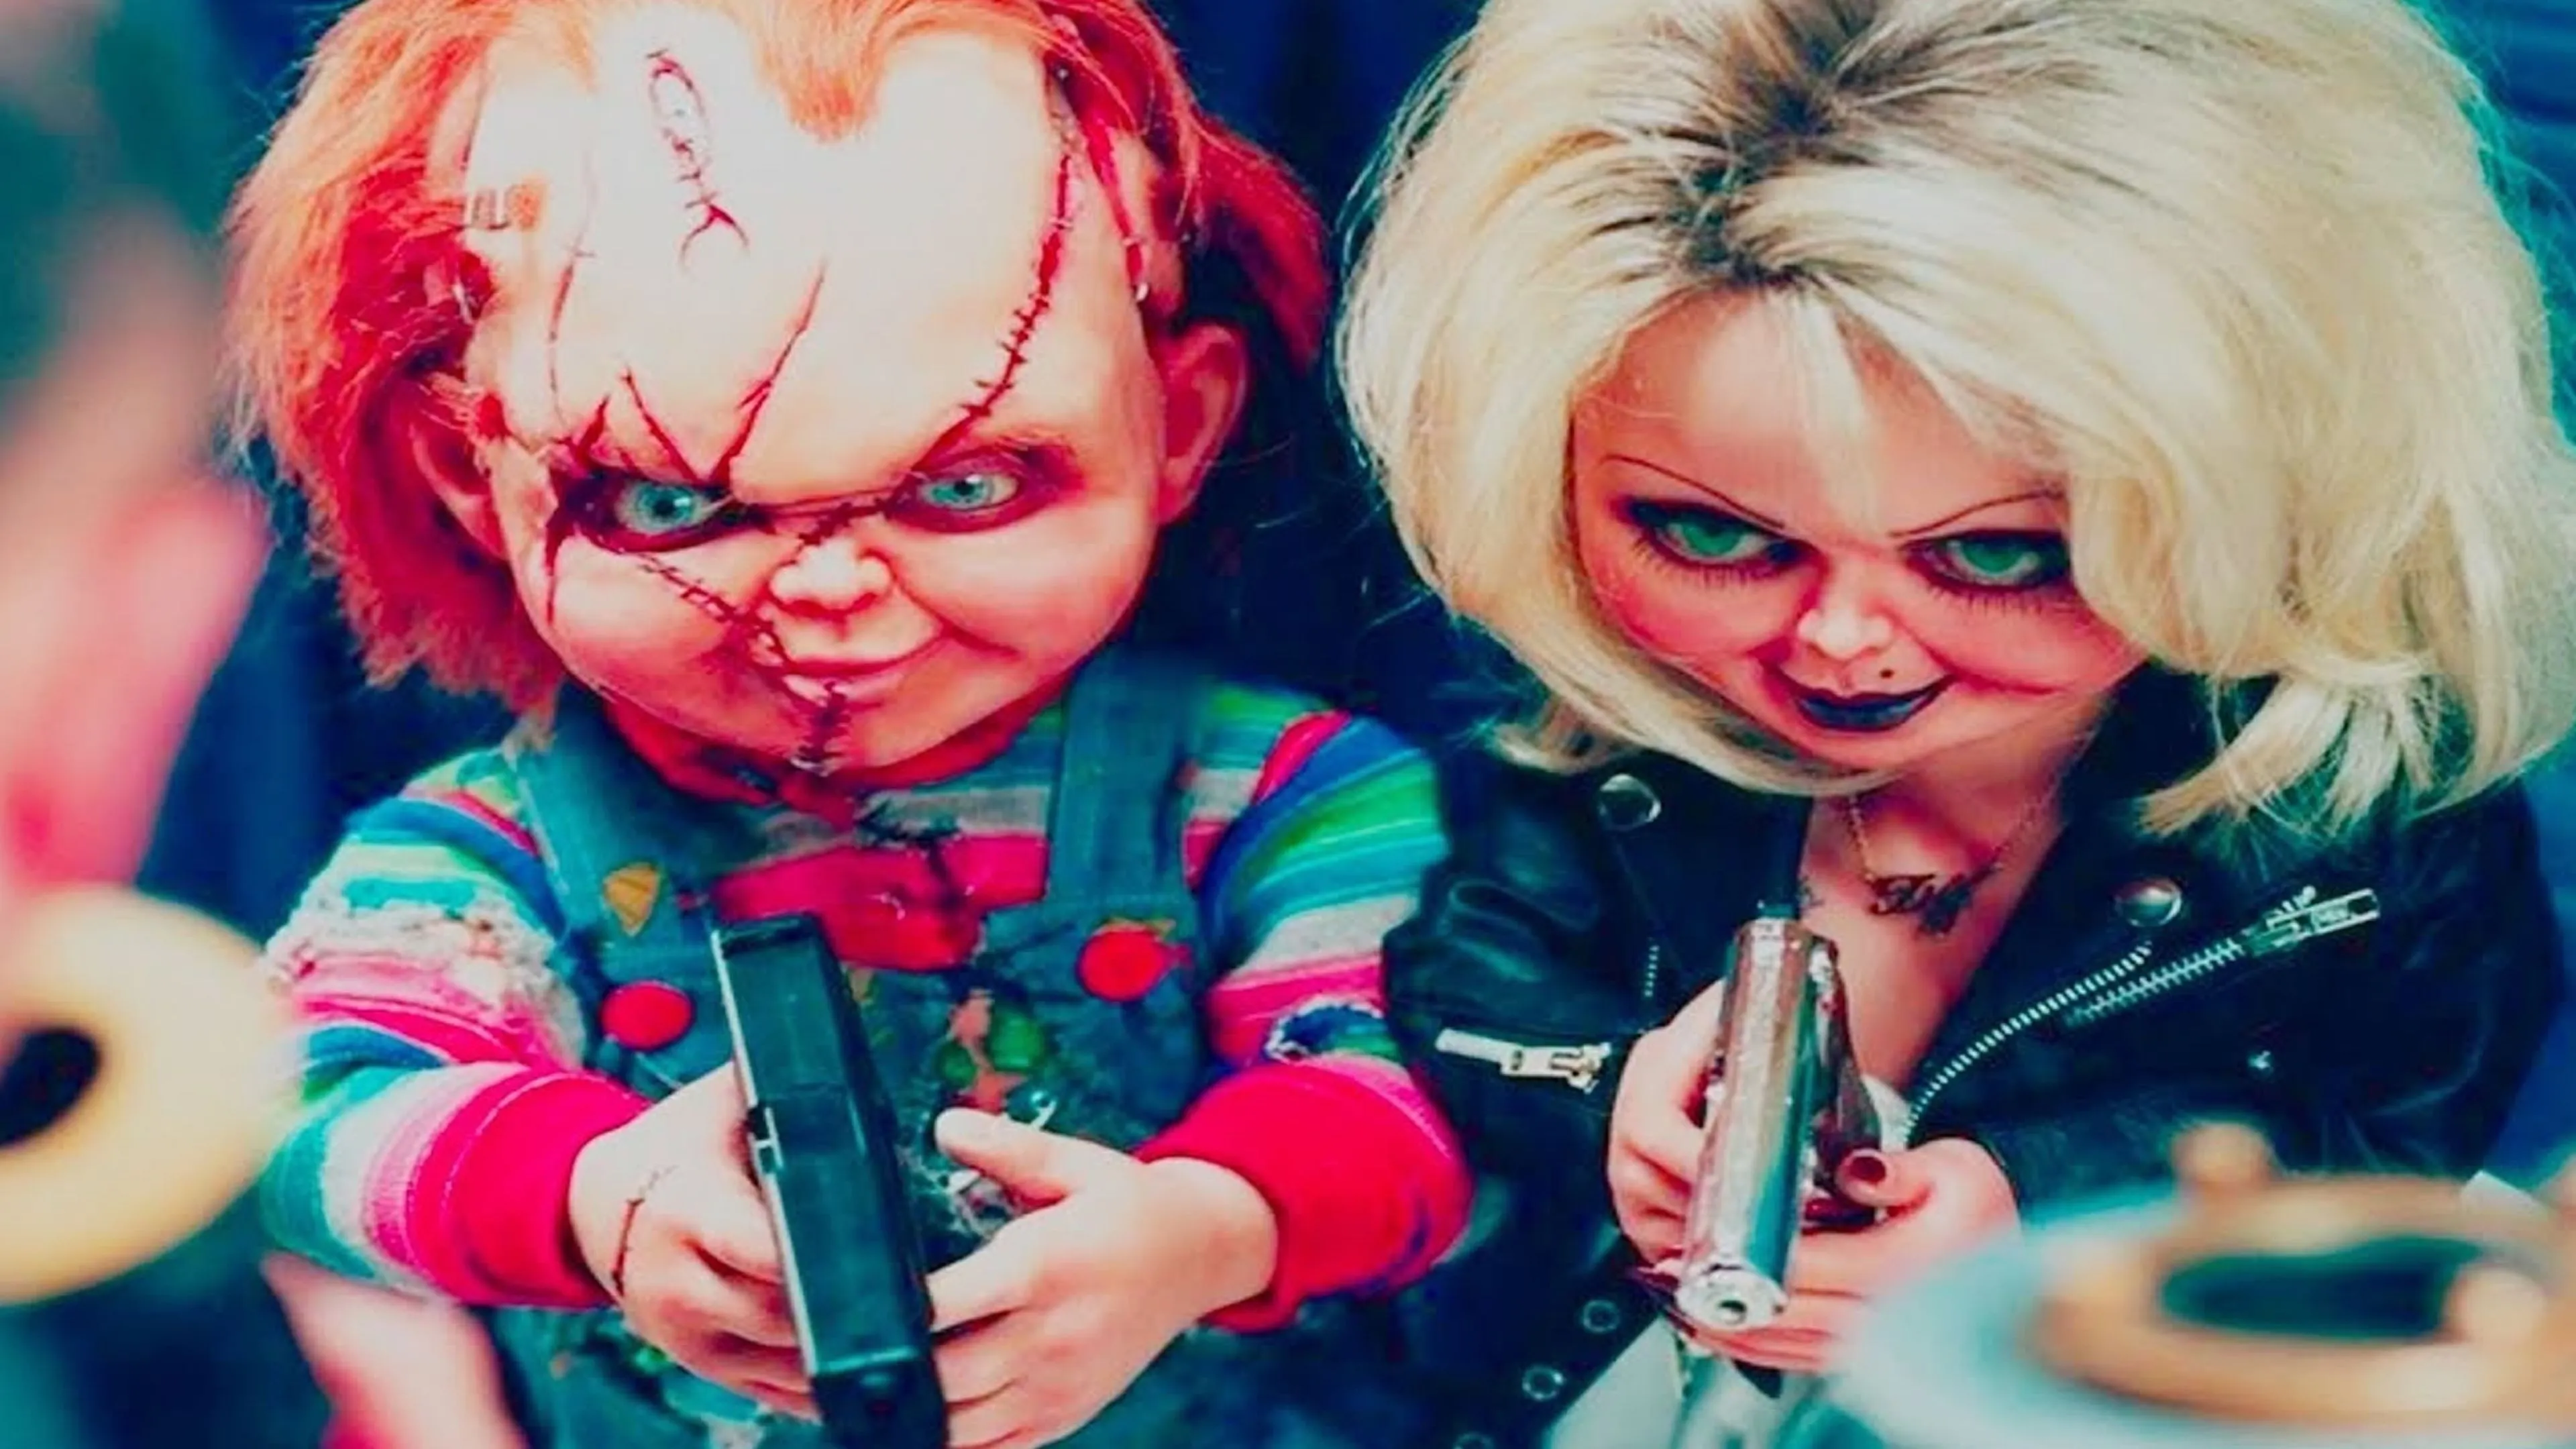 NECA da más detalles sobre sus Chucky y Tiffany de Muñeco diabólico... ¡Con  ojos articulados! | Hobby Consolas